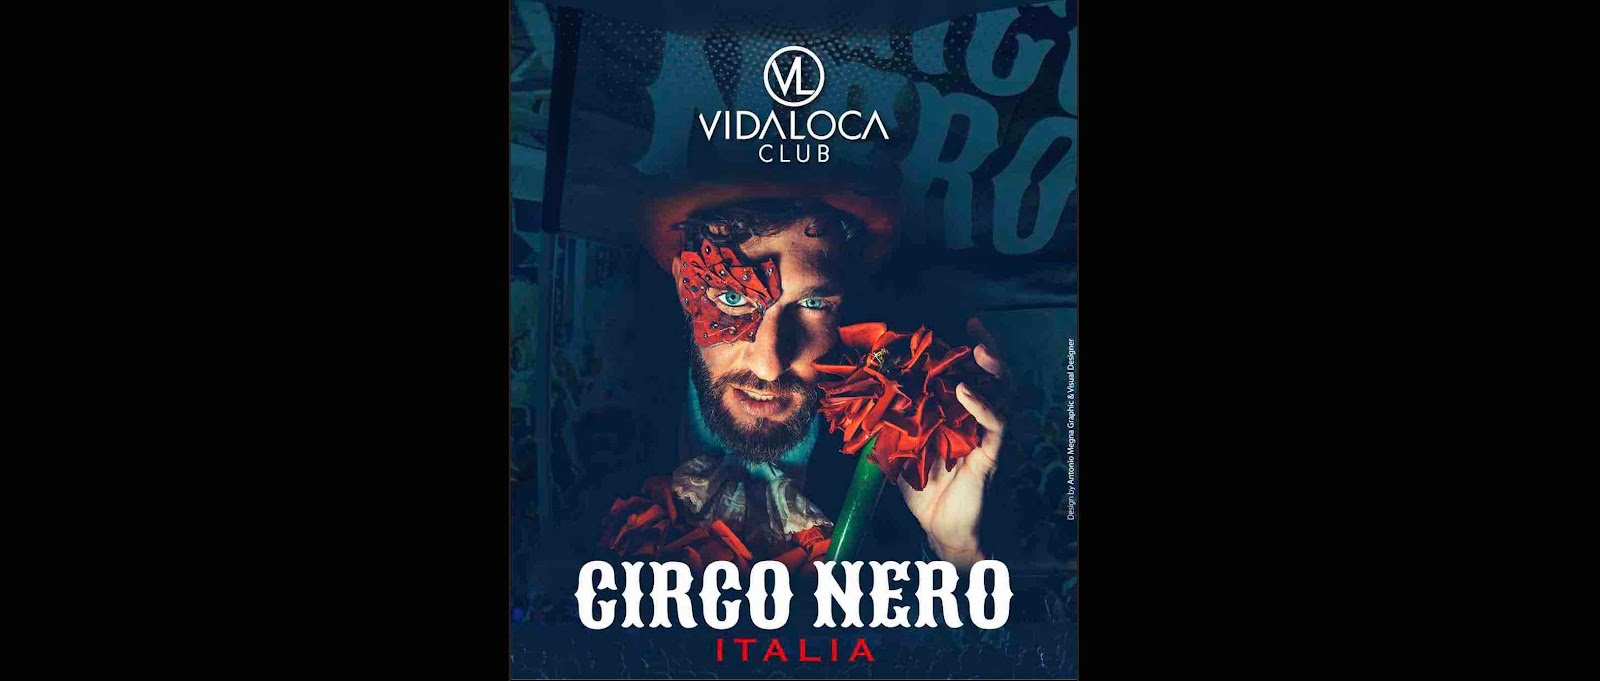 25/3  Circo Nero Italia al Vidaloca - Pantano - Petilia Policastro (KR)